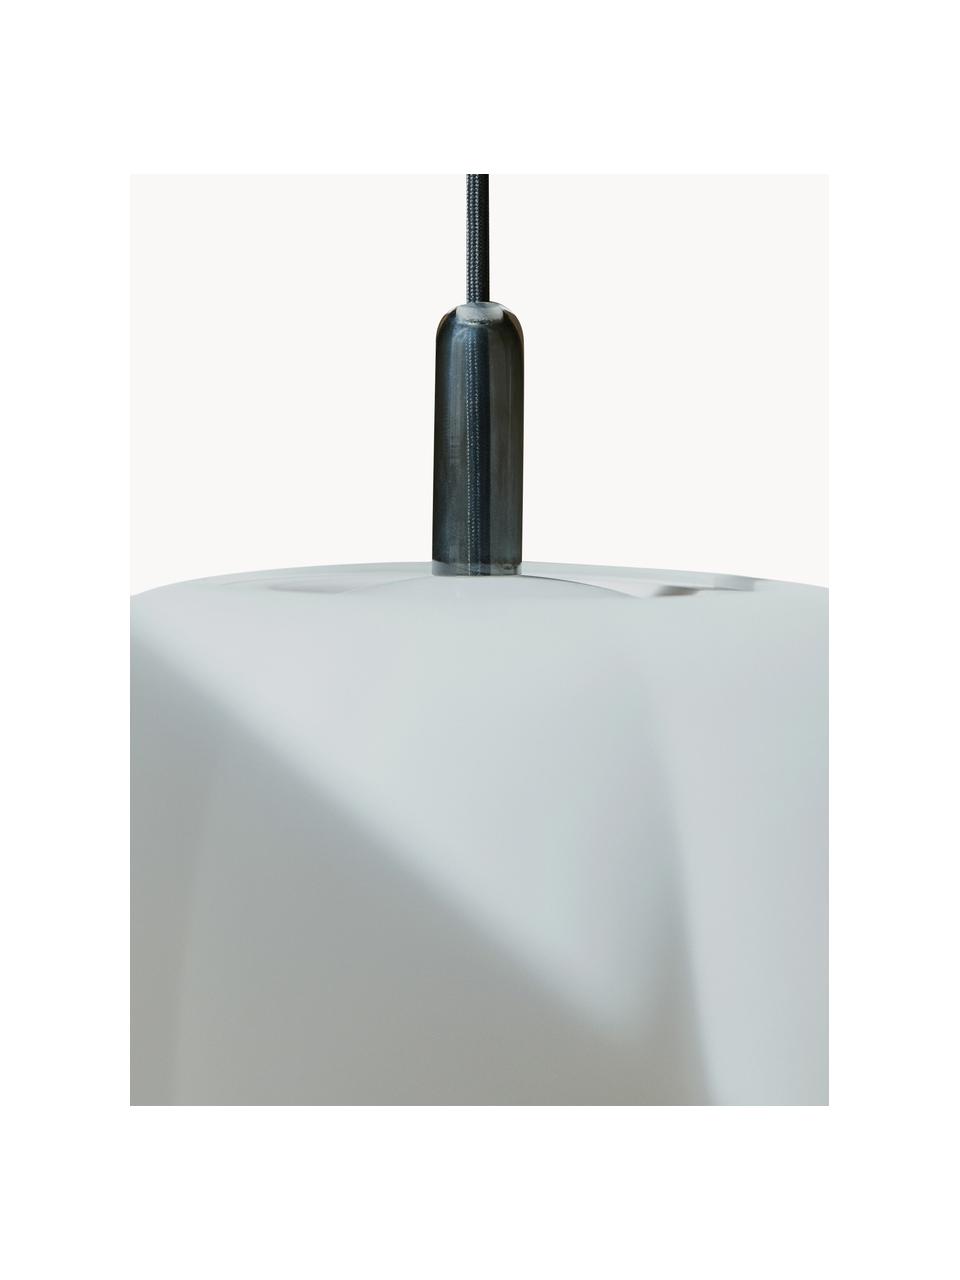 Lampa wisząca ze szkła Pepo, różne rozmiary, Biały, Ø 20 x 18 cm